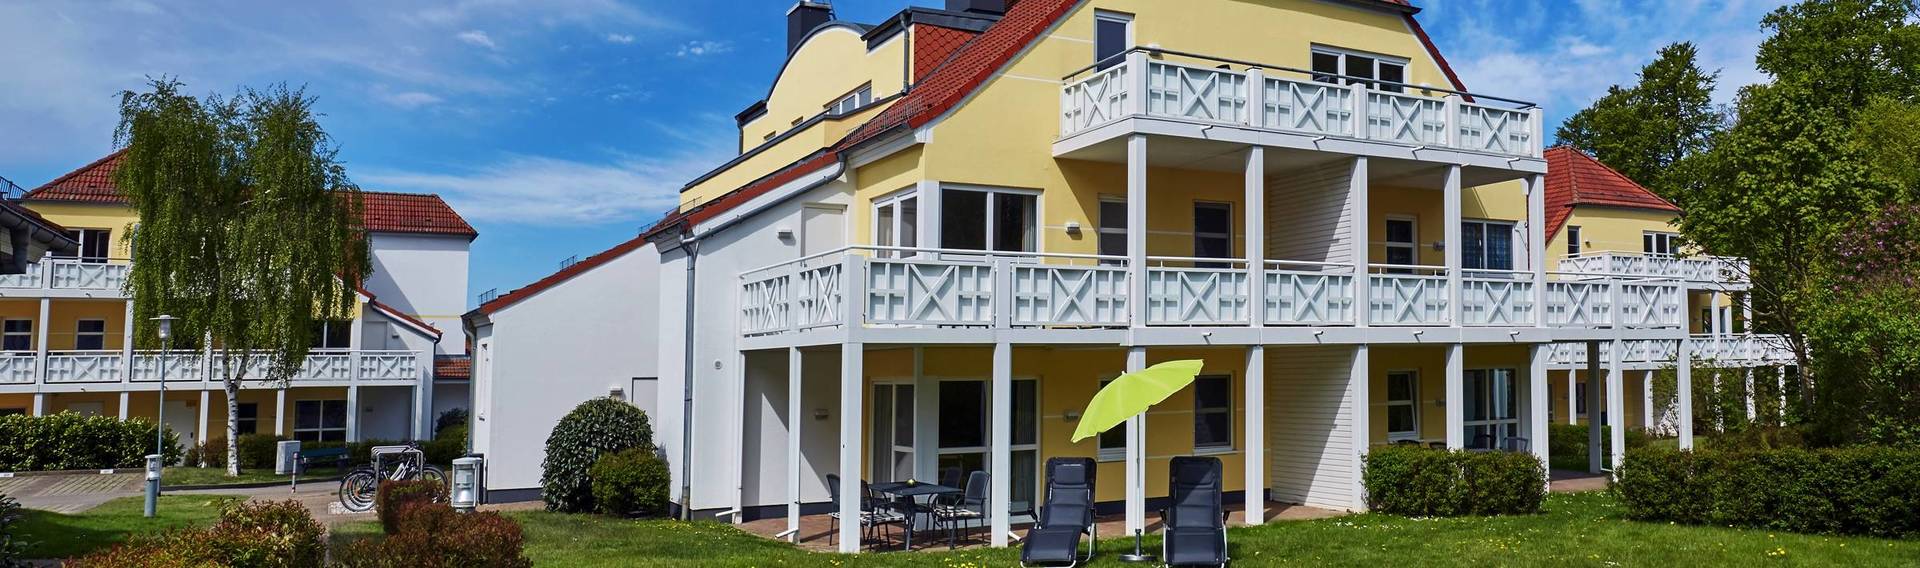 Willkommen auf der Sonneninsel - H+ Hotel Ferienpark Usedom